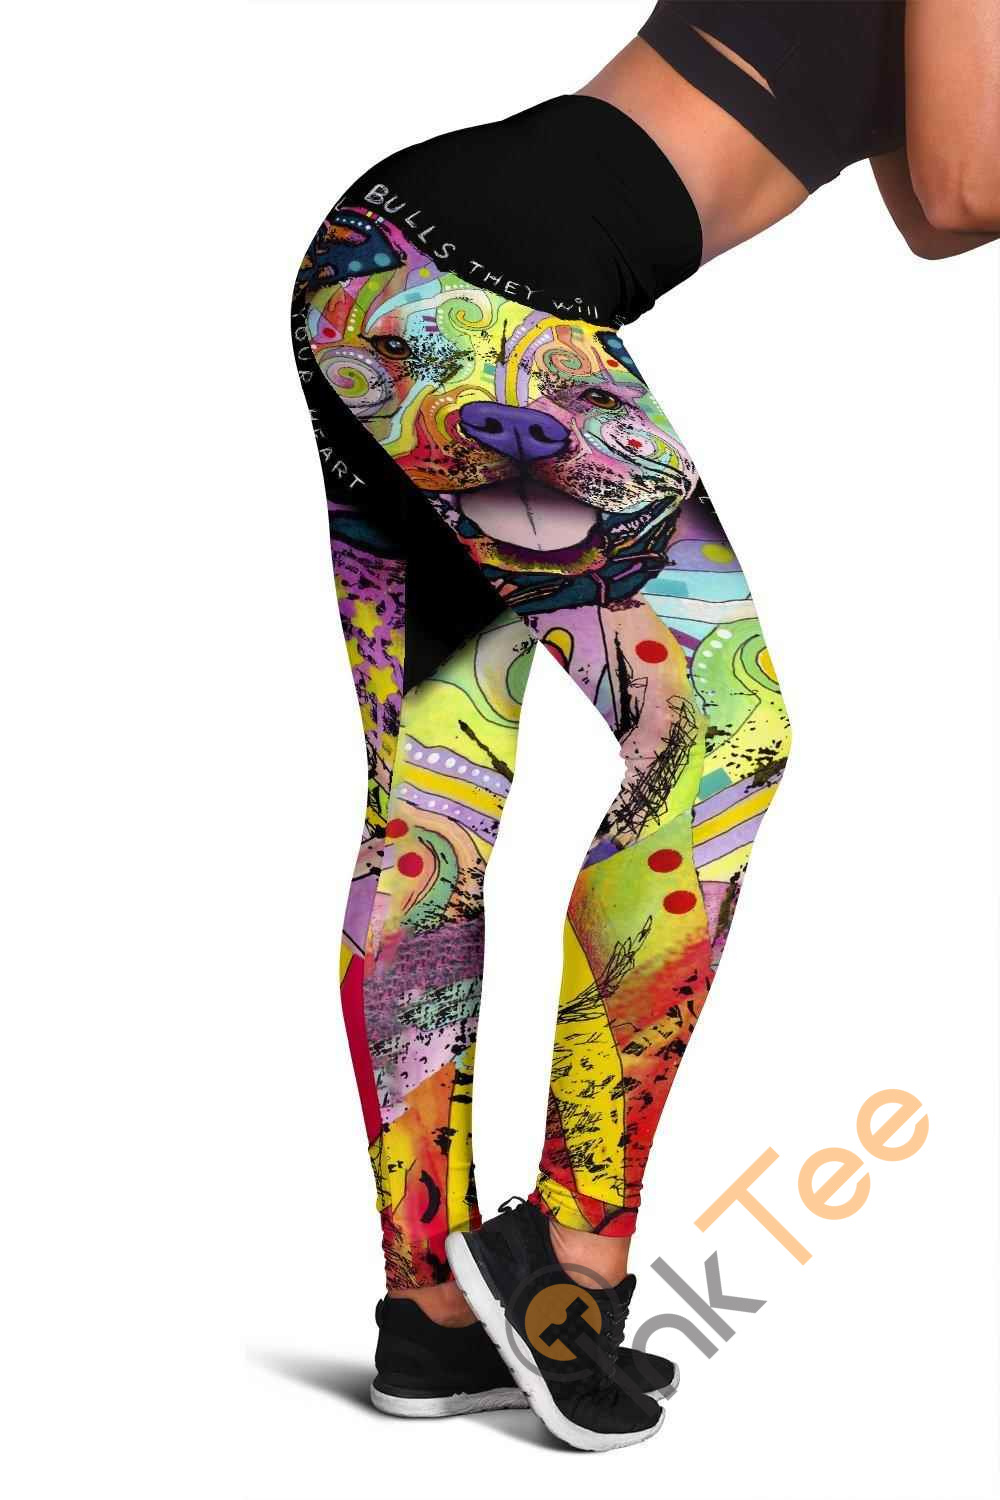 Inktee Store - Pit Bull 3D All Over Print For Yoga Fitness Women'S Leggings Image